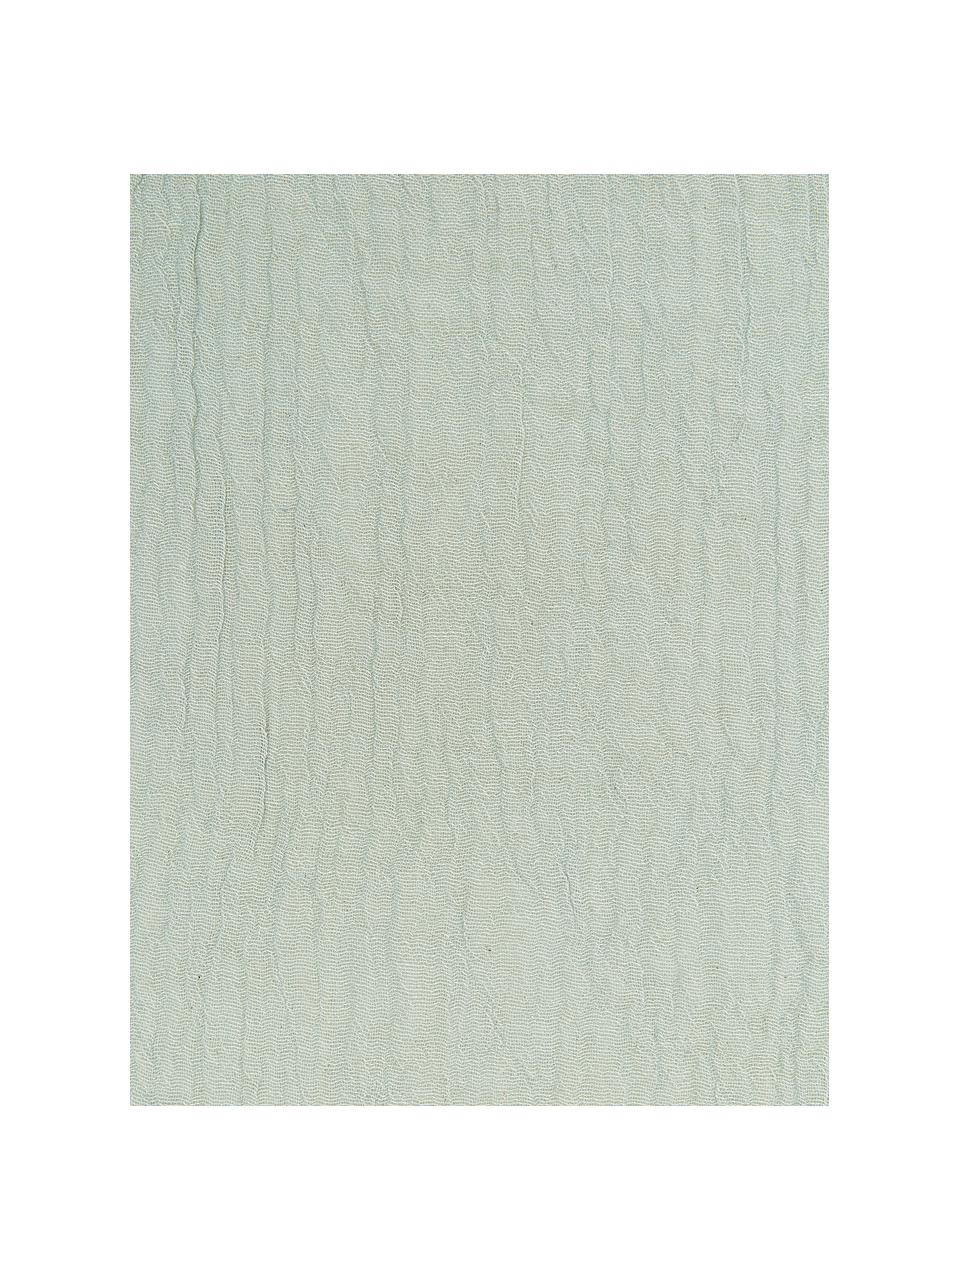 Stoff-Servietten Layer in Salbeigrün, 4 Stück, 100% Baumwolle, Hellgrün, B 45 x L 45 cm